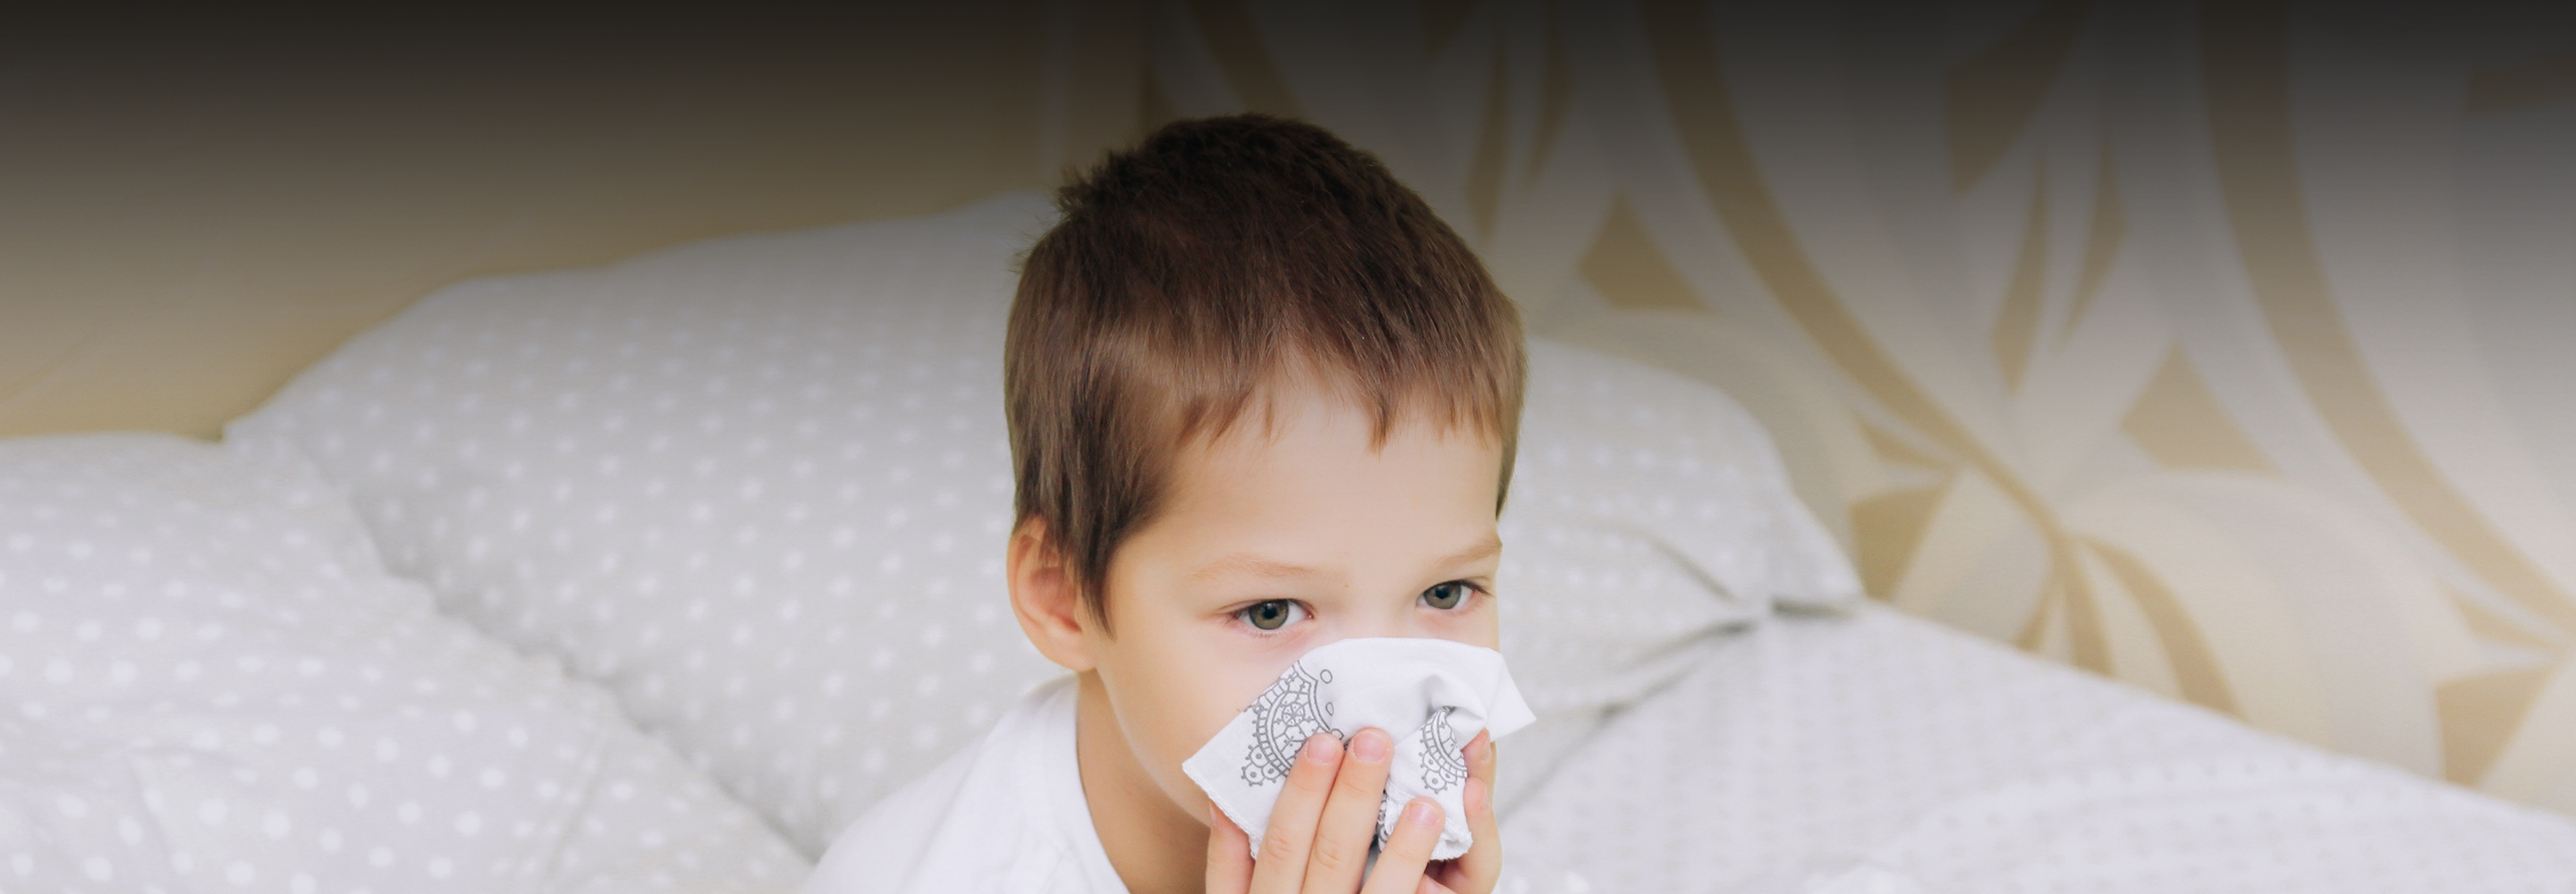 14 болезней детсадовцев: чем можно заразиться и как защитить ребенка